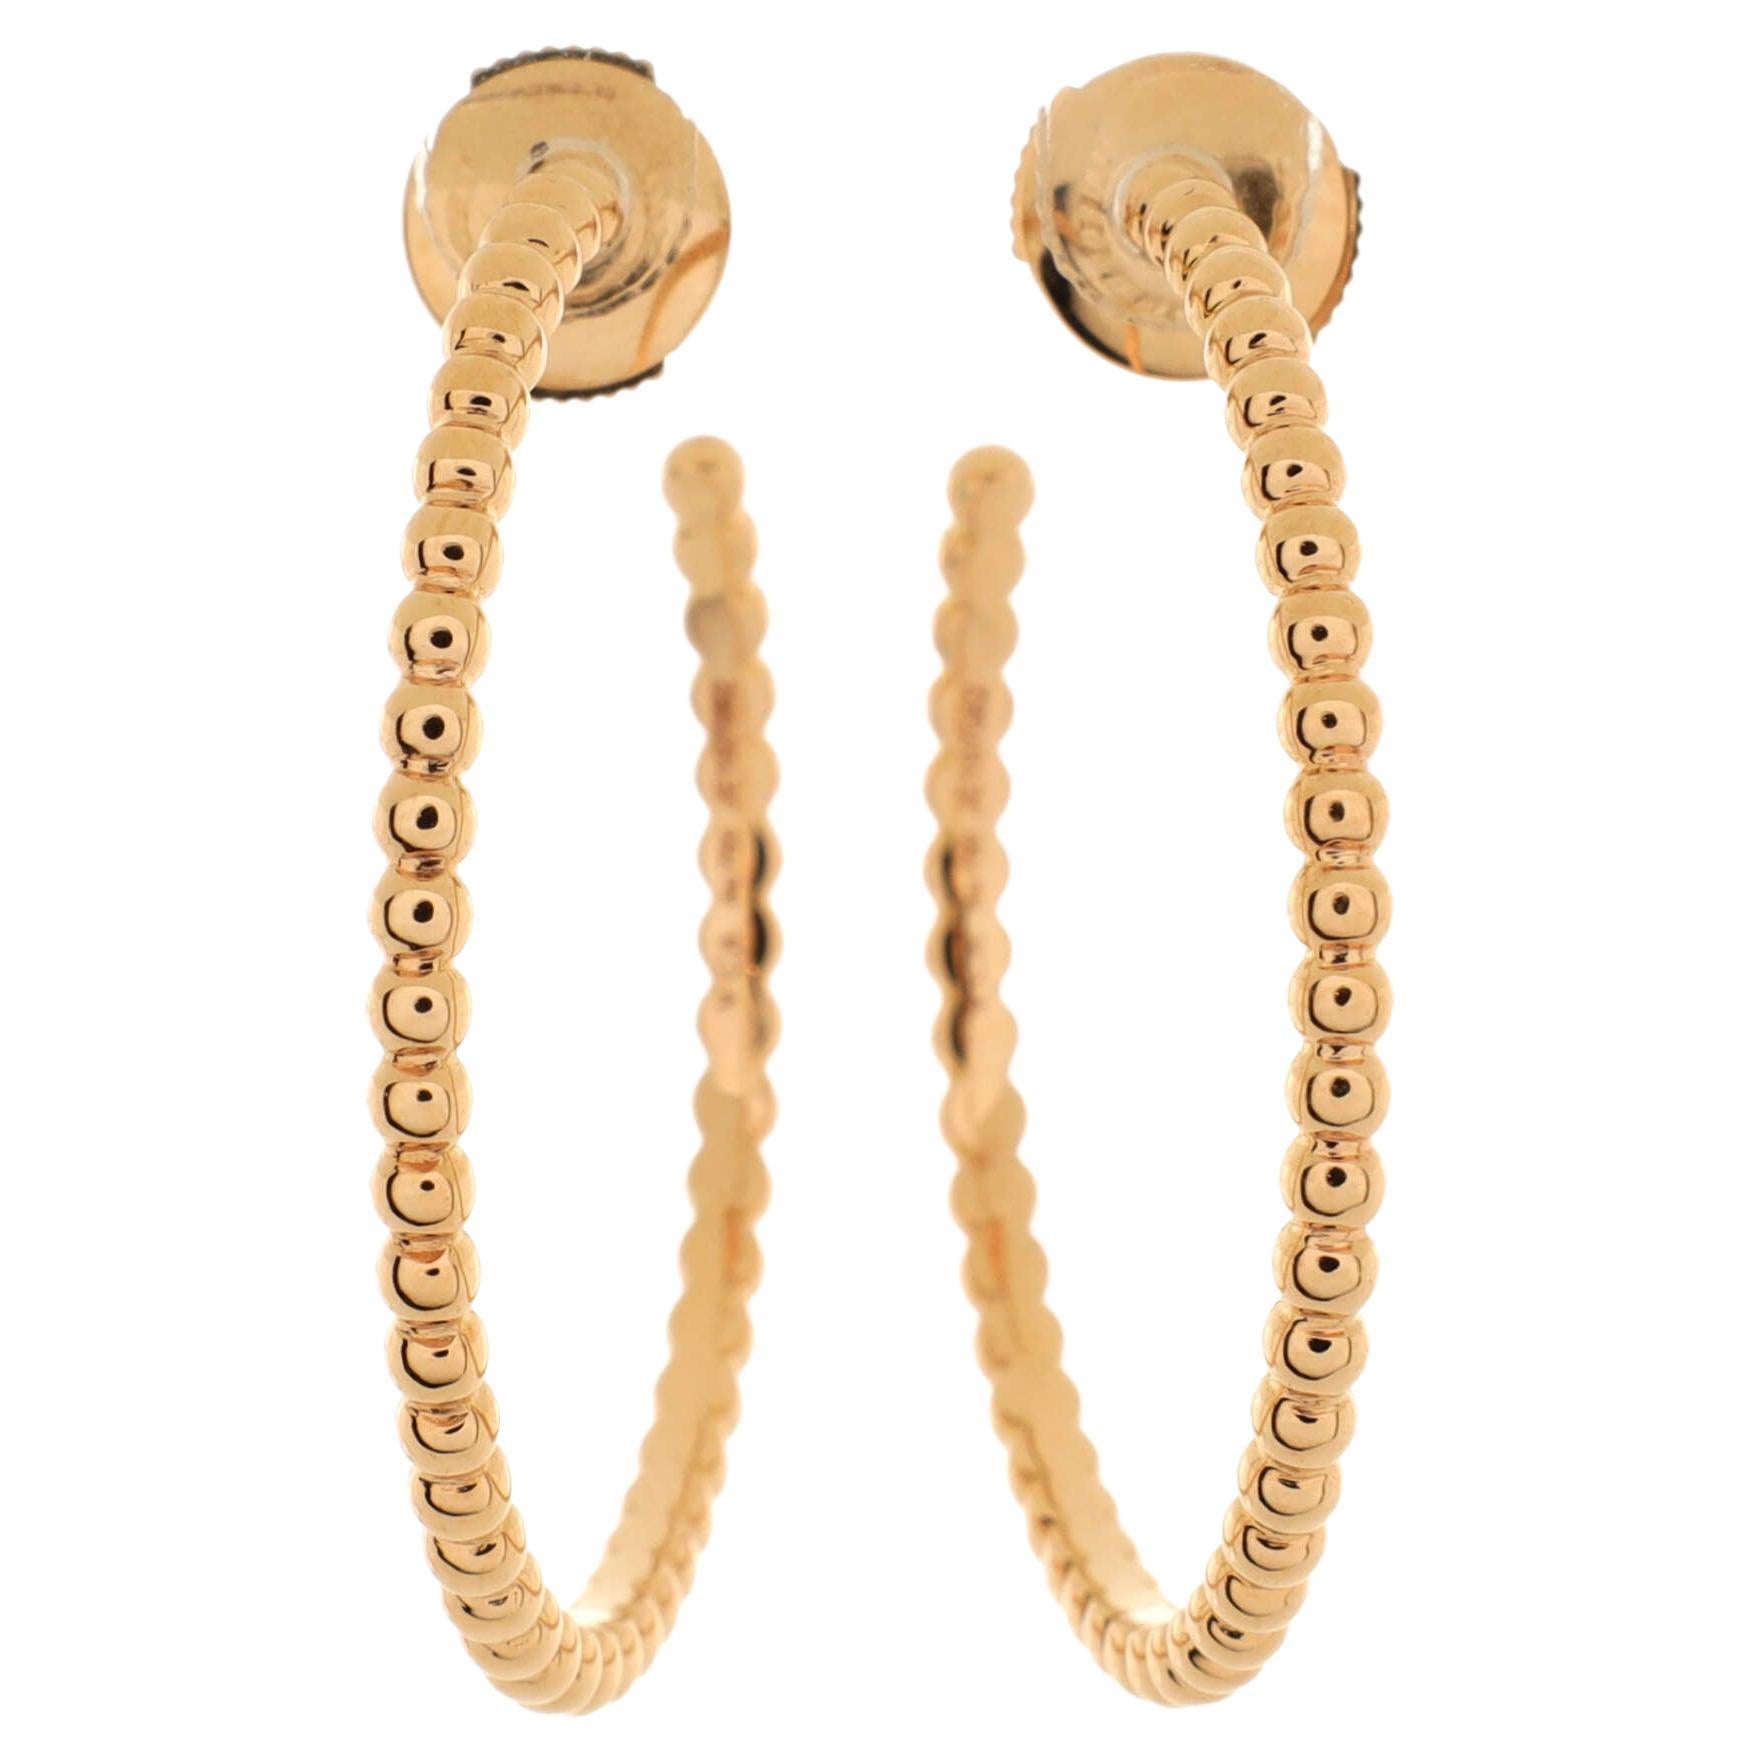 Van Cleef & Arpels Perlee Pearls of Gold Hoop Earrings 18K Rose Gold Small